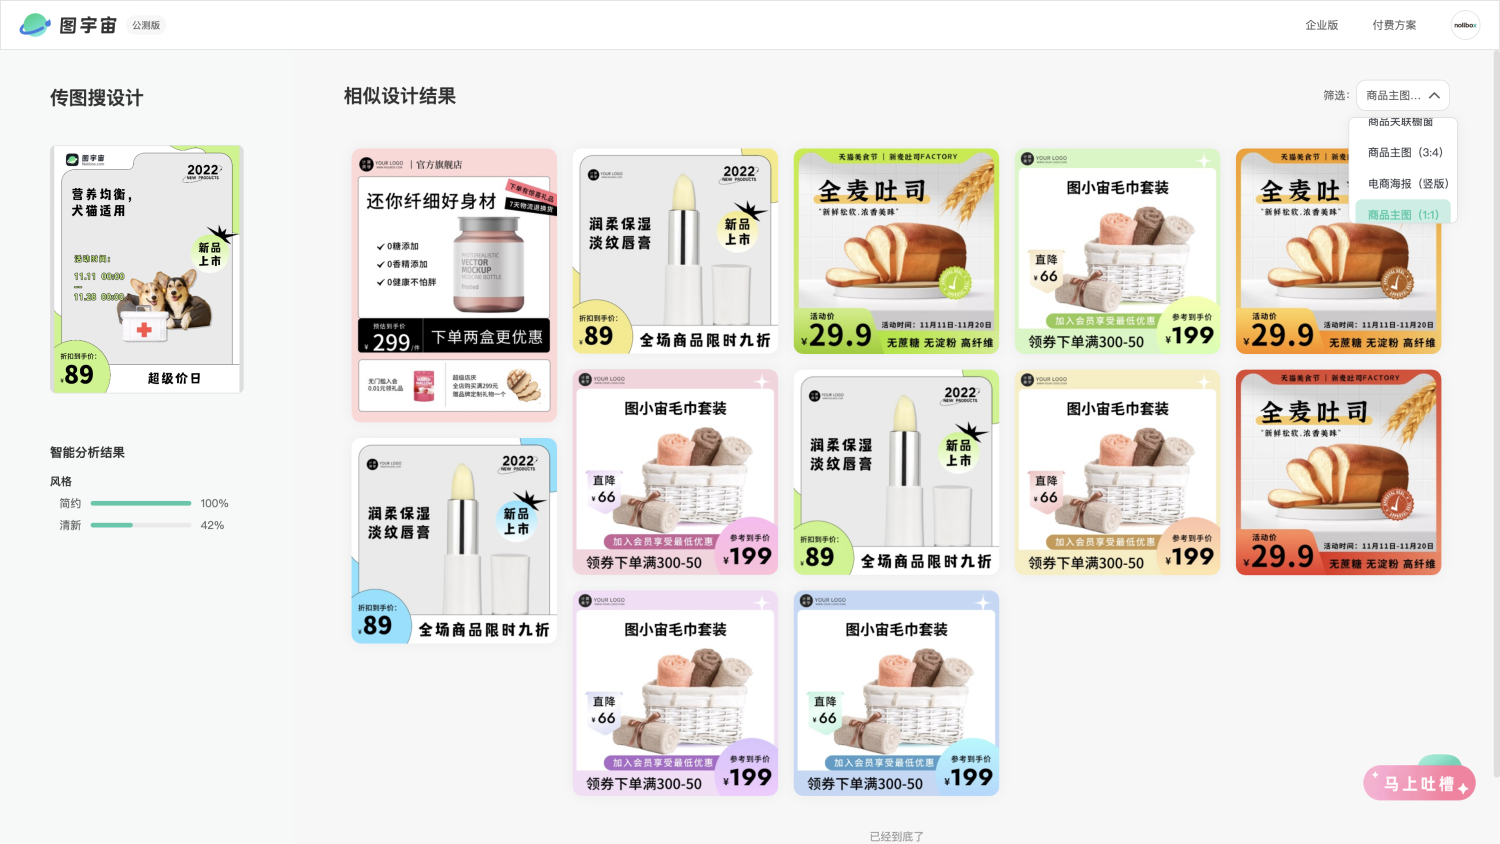 图宇宙-「宠物医疗保健」商品主图（1:1）模板中心结果展示